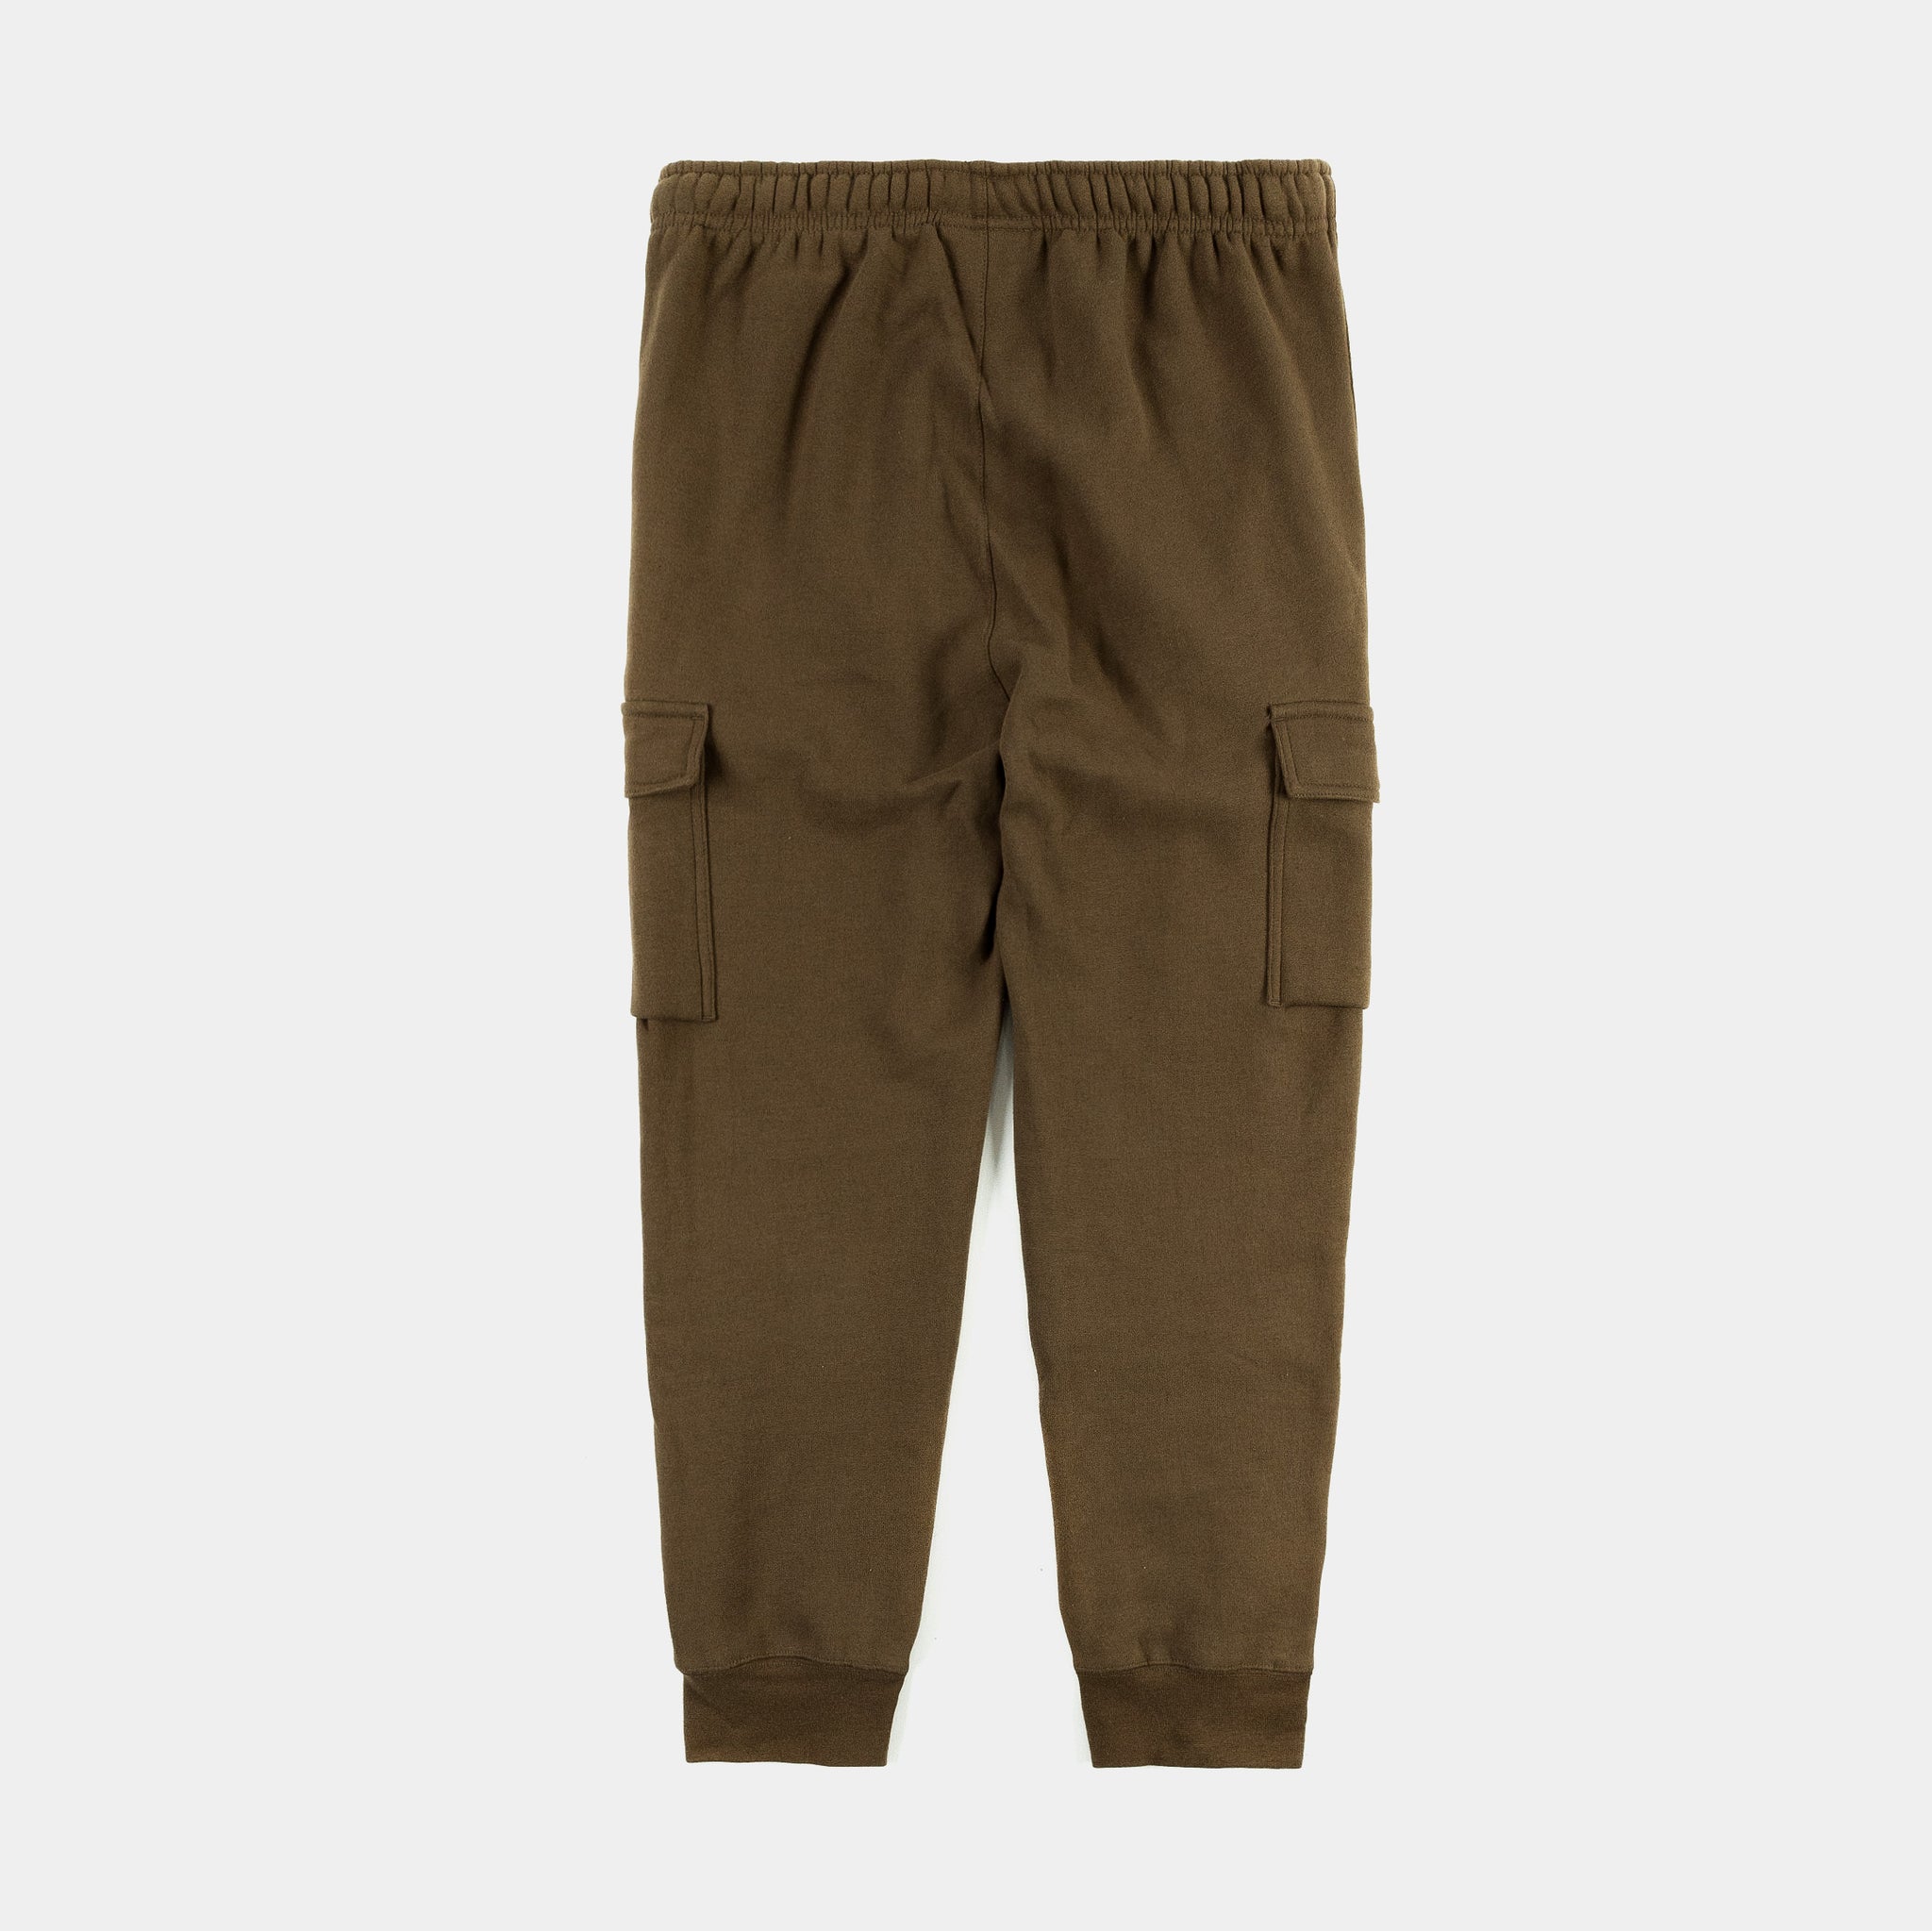 light brown cargo pants 100 cotton canvas paisley print – KROST